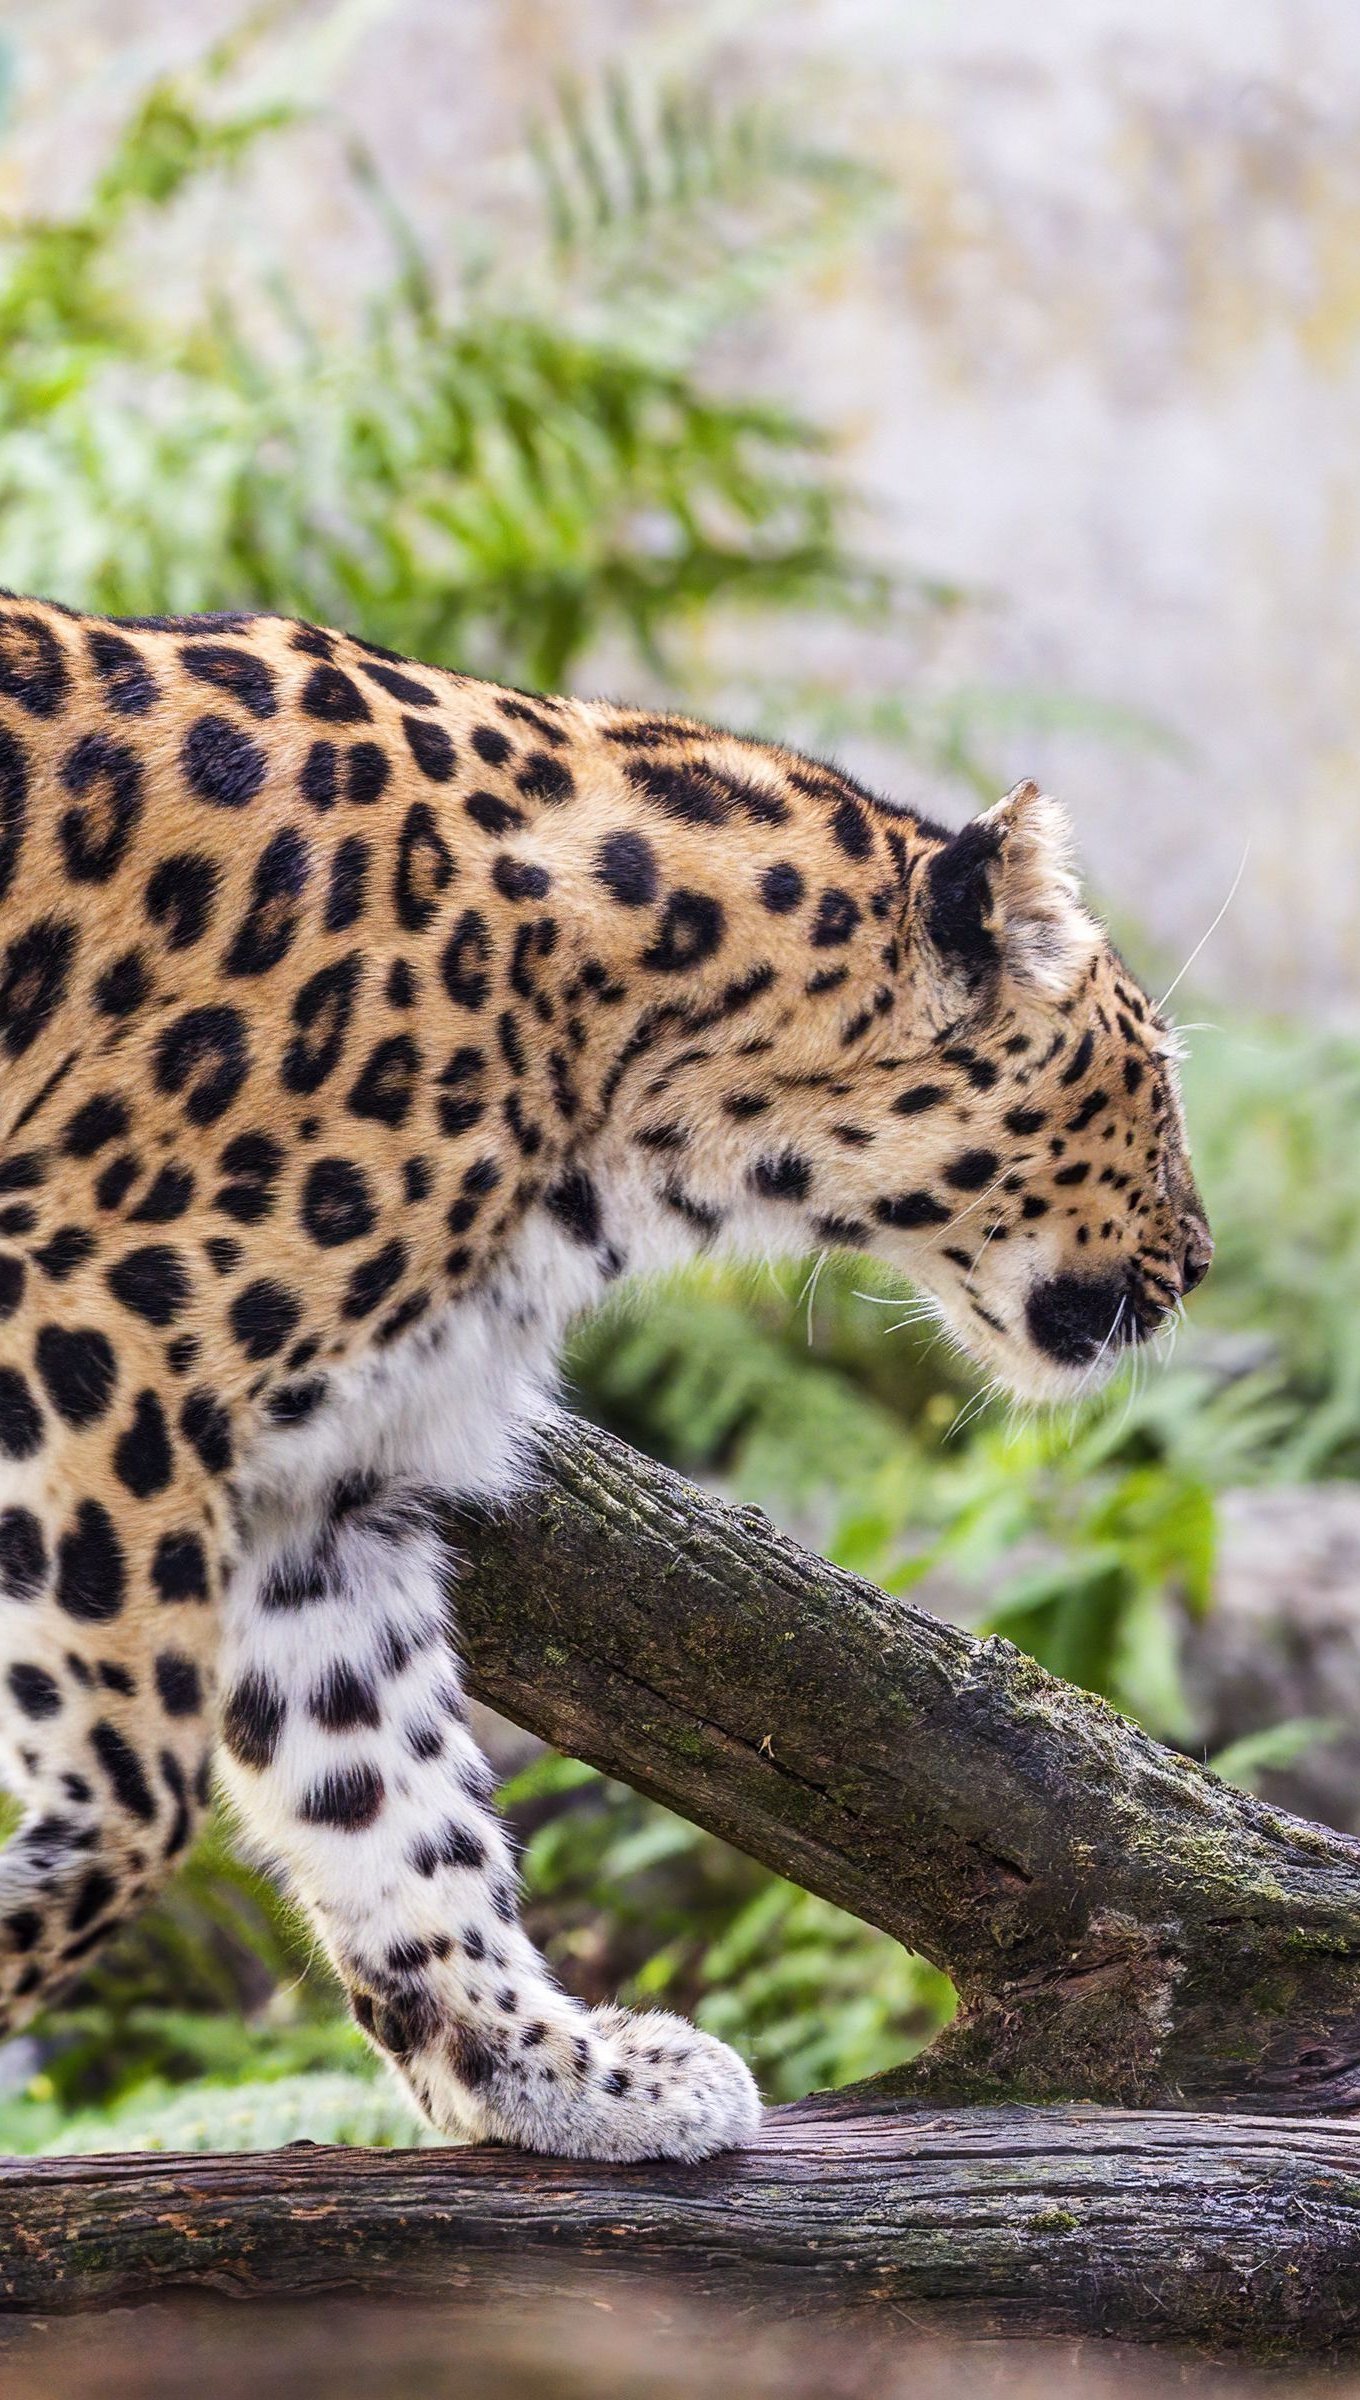 Fondos de pantalla Leopardo caminando Vertical